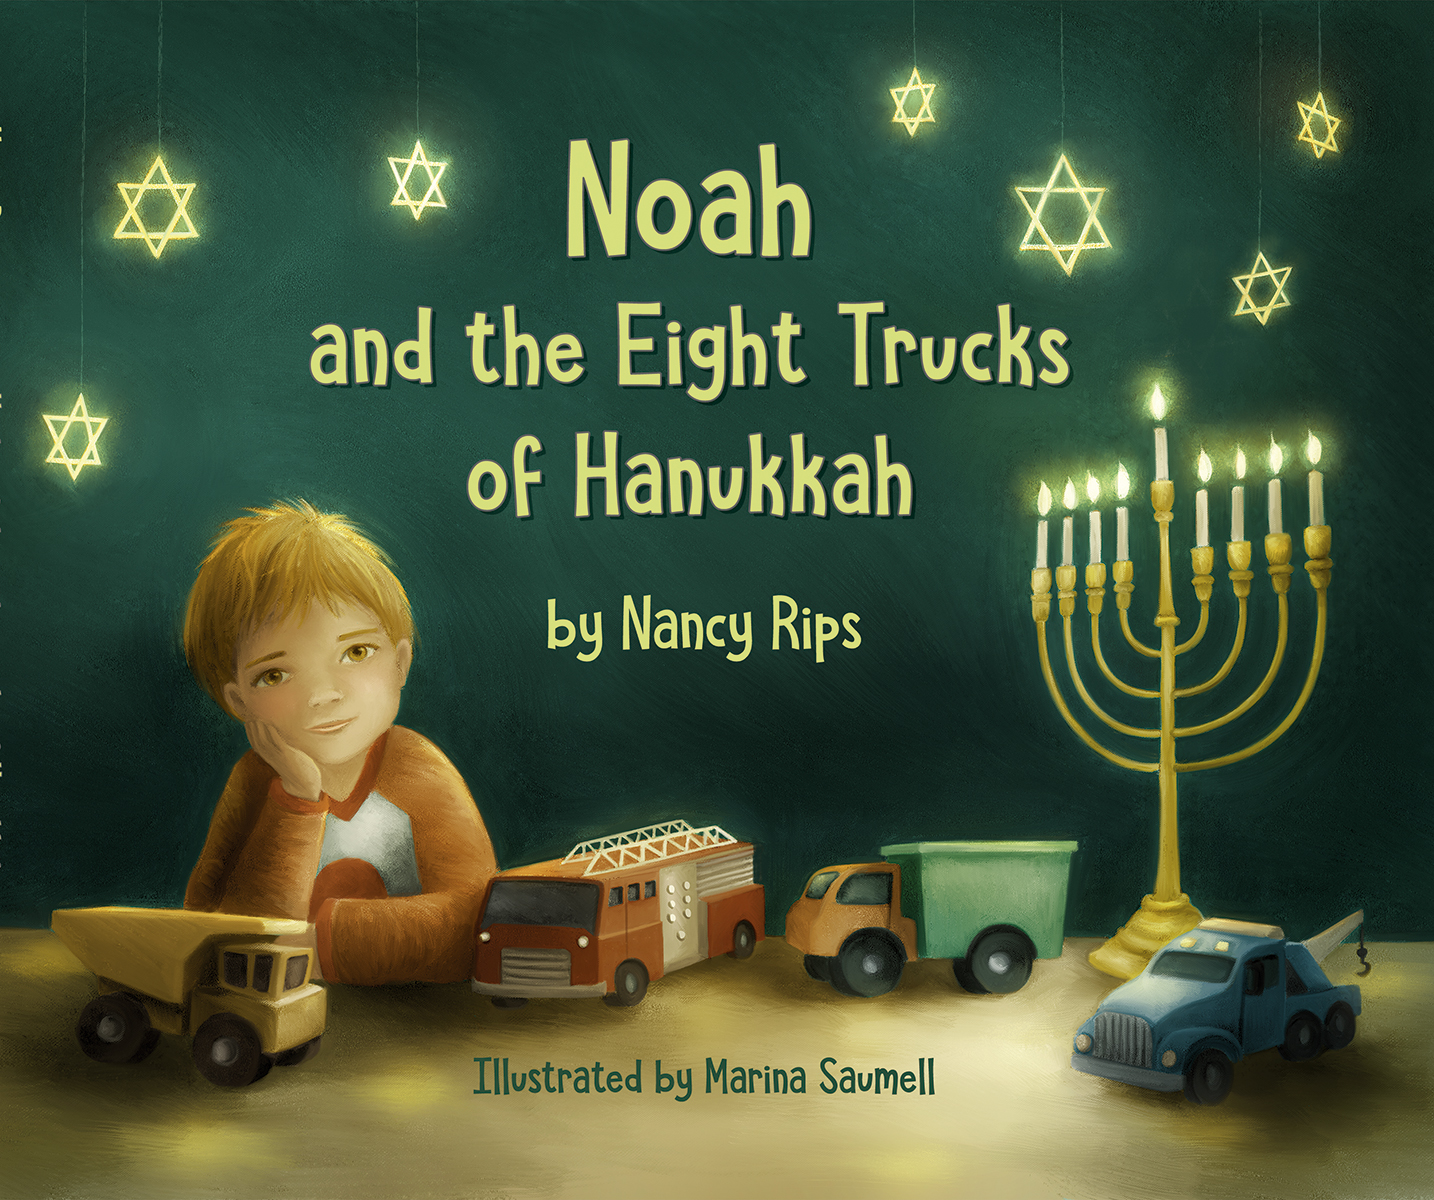 Noah and the Eight Trucks of Hanukkah